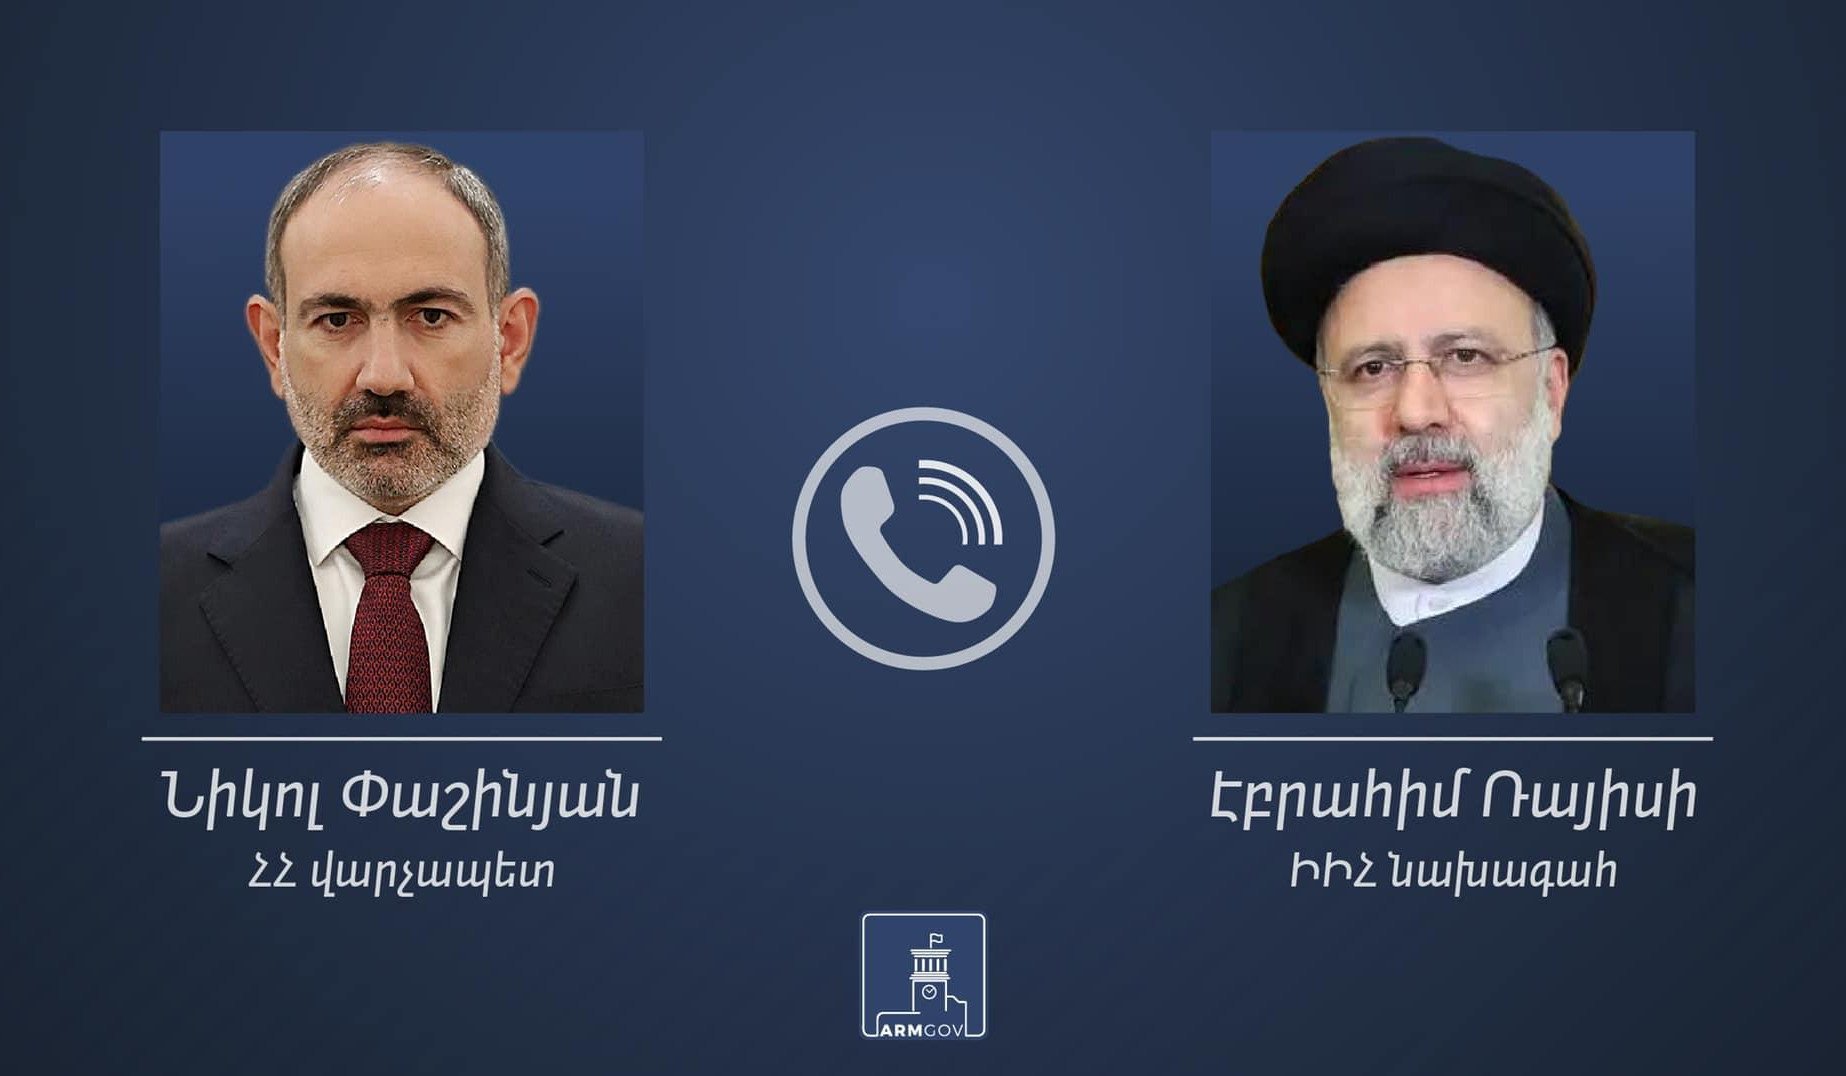 ՀՀ վարչապետն Իրանի նախագահին մանրամասներ է ներկայացրել Հայաստանի և Ադրբեջանի միջև սահմանային վերջին միջադեպերի վերաբերյալ